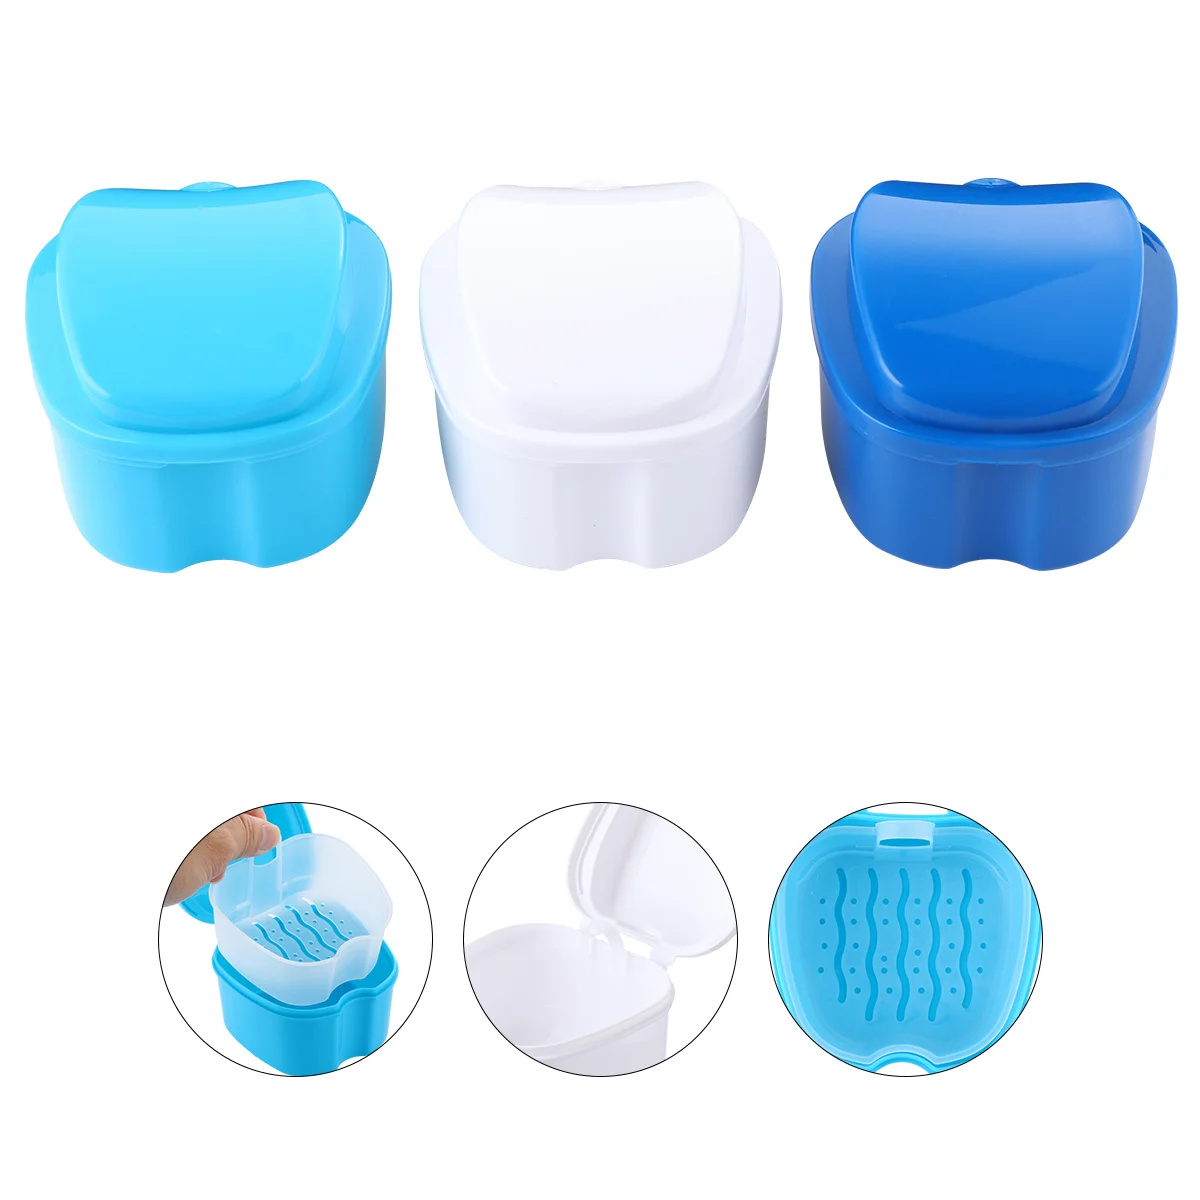 

3 Pcs Denture Box False Teeth Retainer Dental Container Storage Case Plastic Containers Hinge